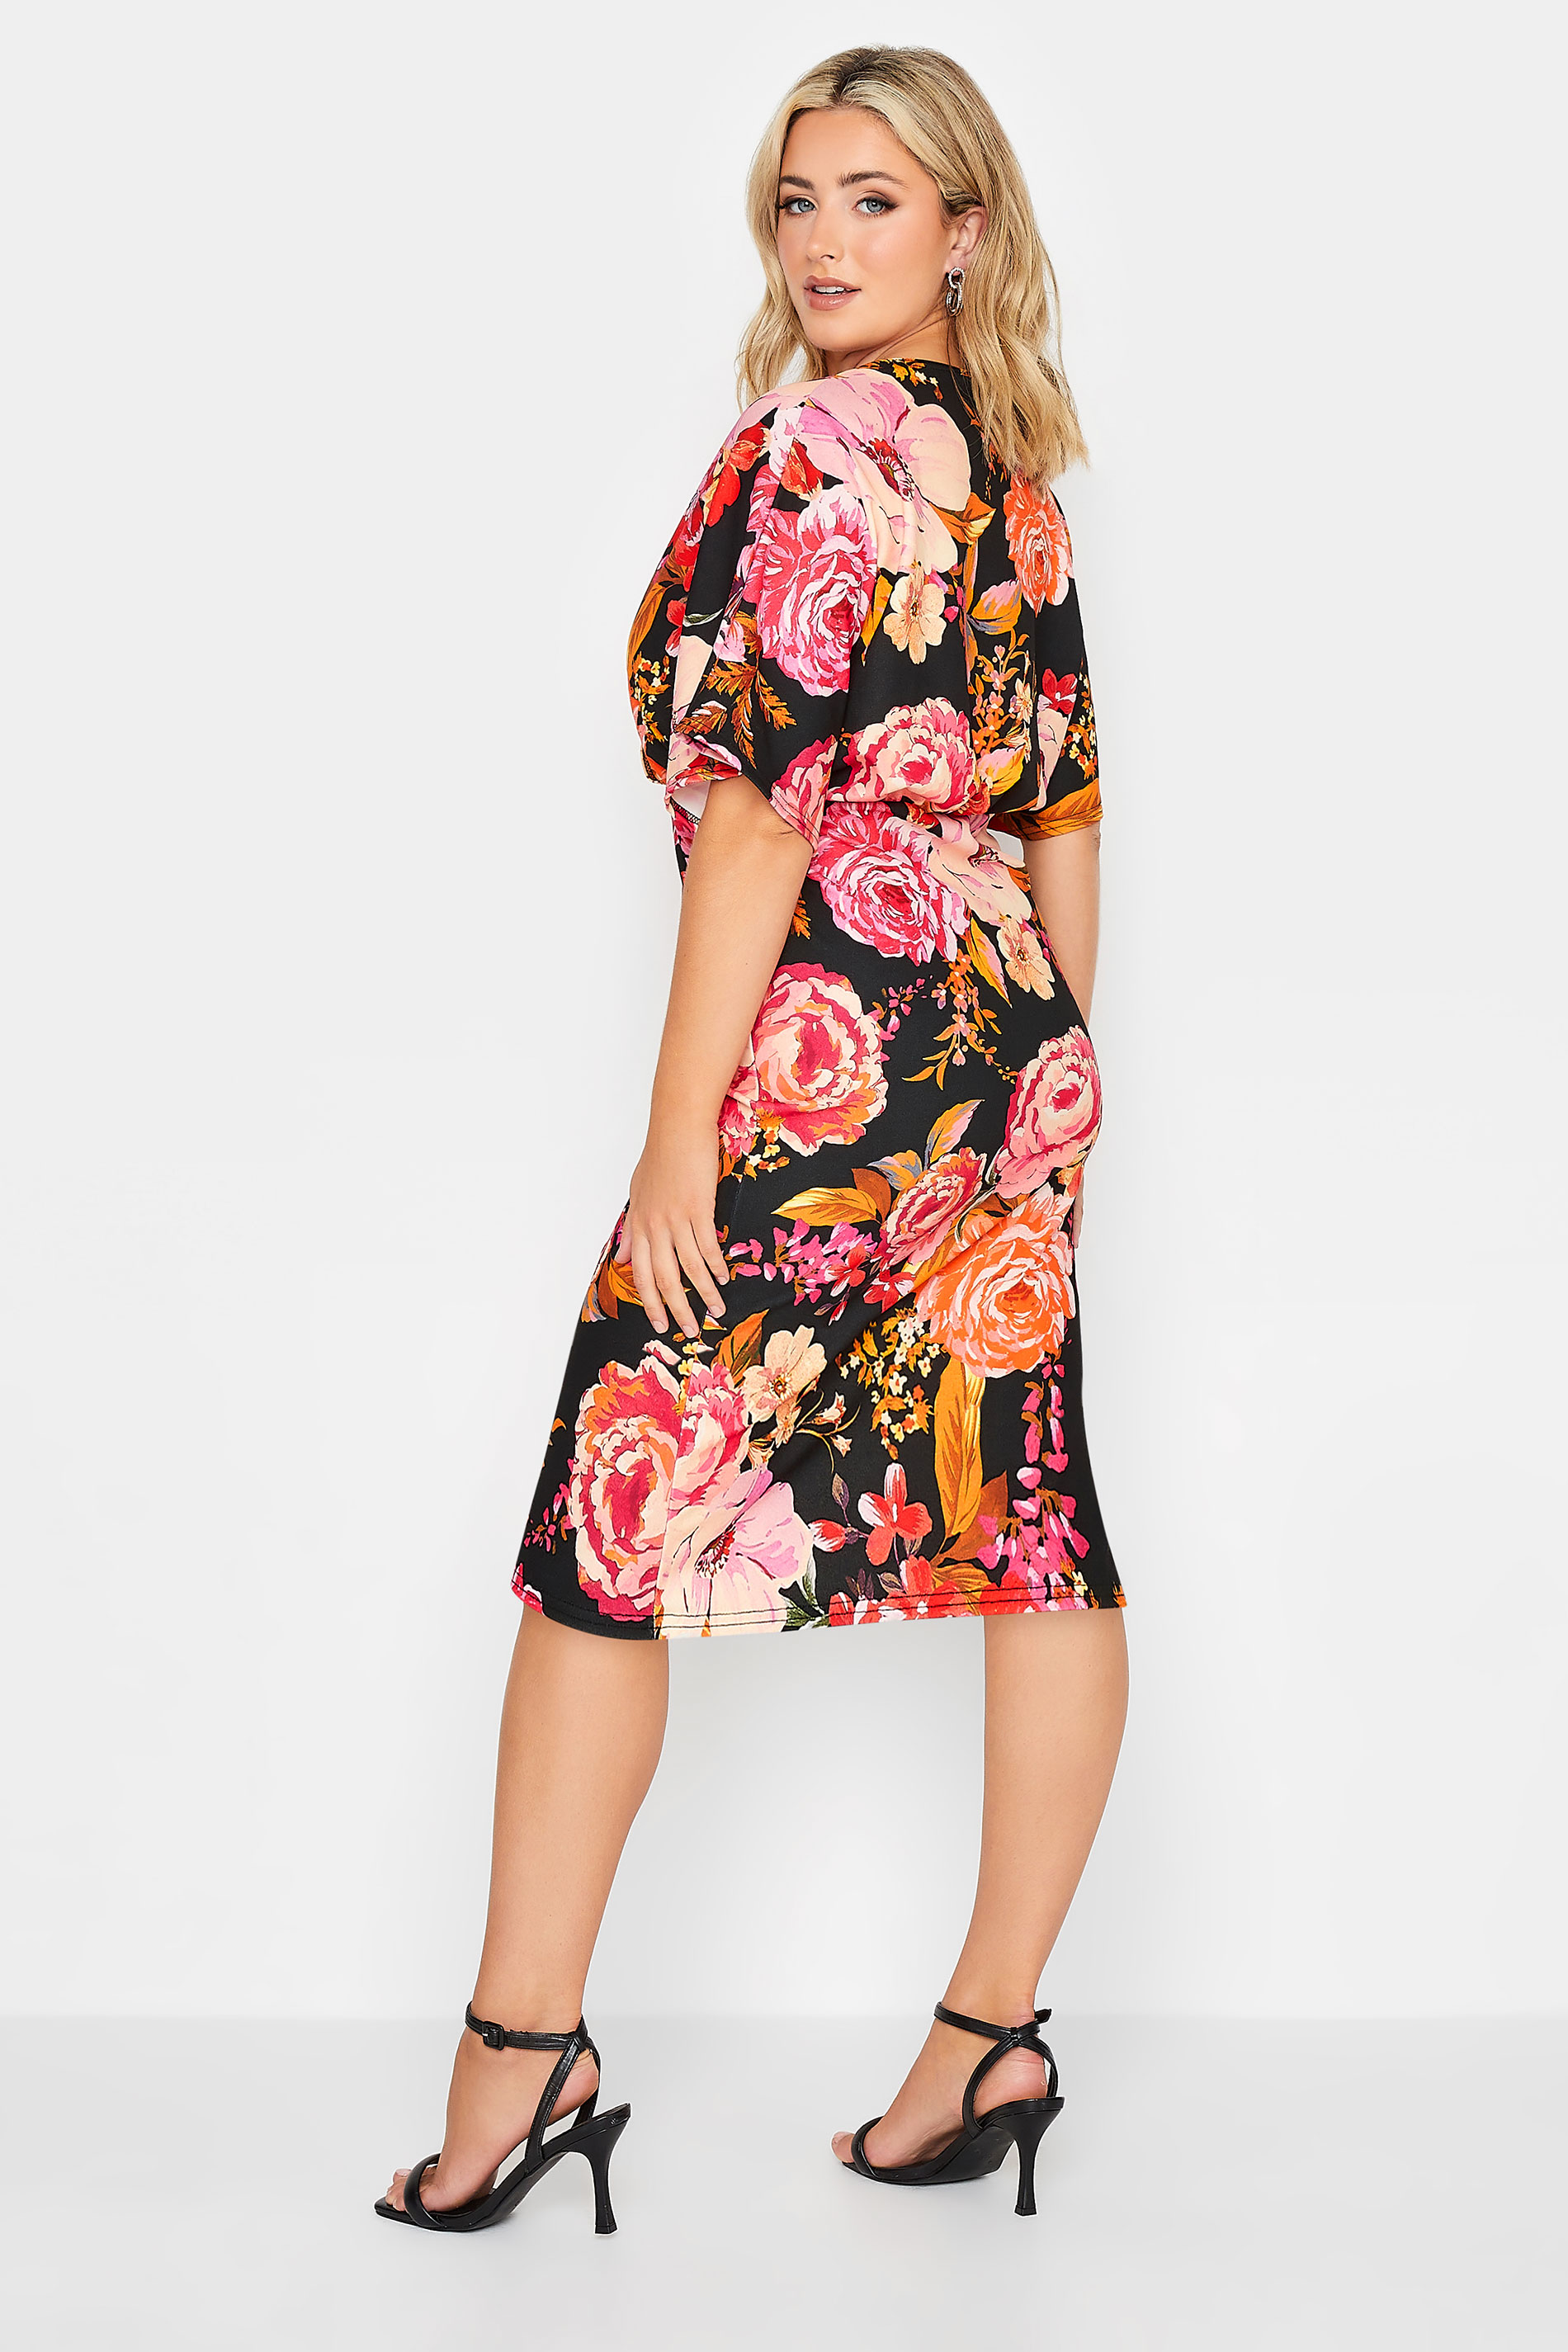 YOURS Curve Plus Size Petite Black Floral Wrap Midi Dress | Yours Clothing  3